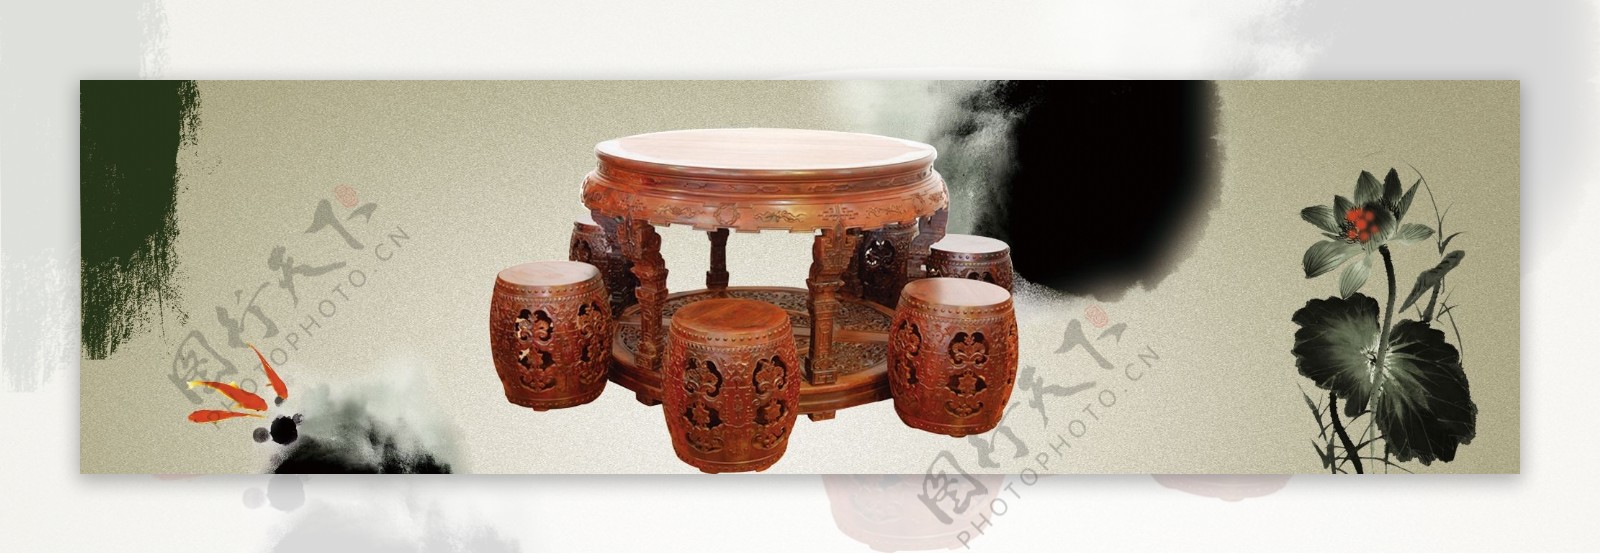 红木家具花园桌凳荷花鱼中国风图片